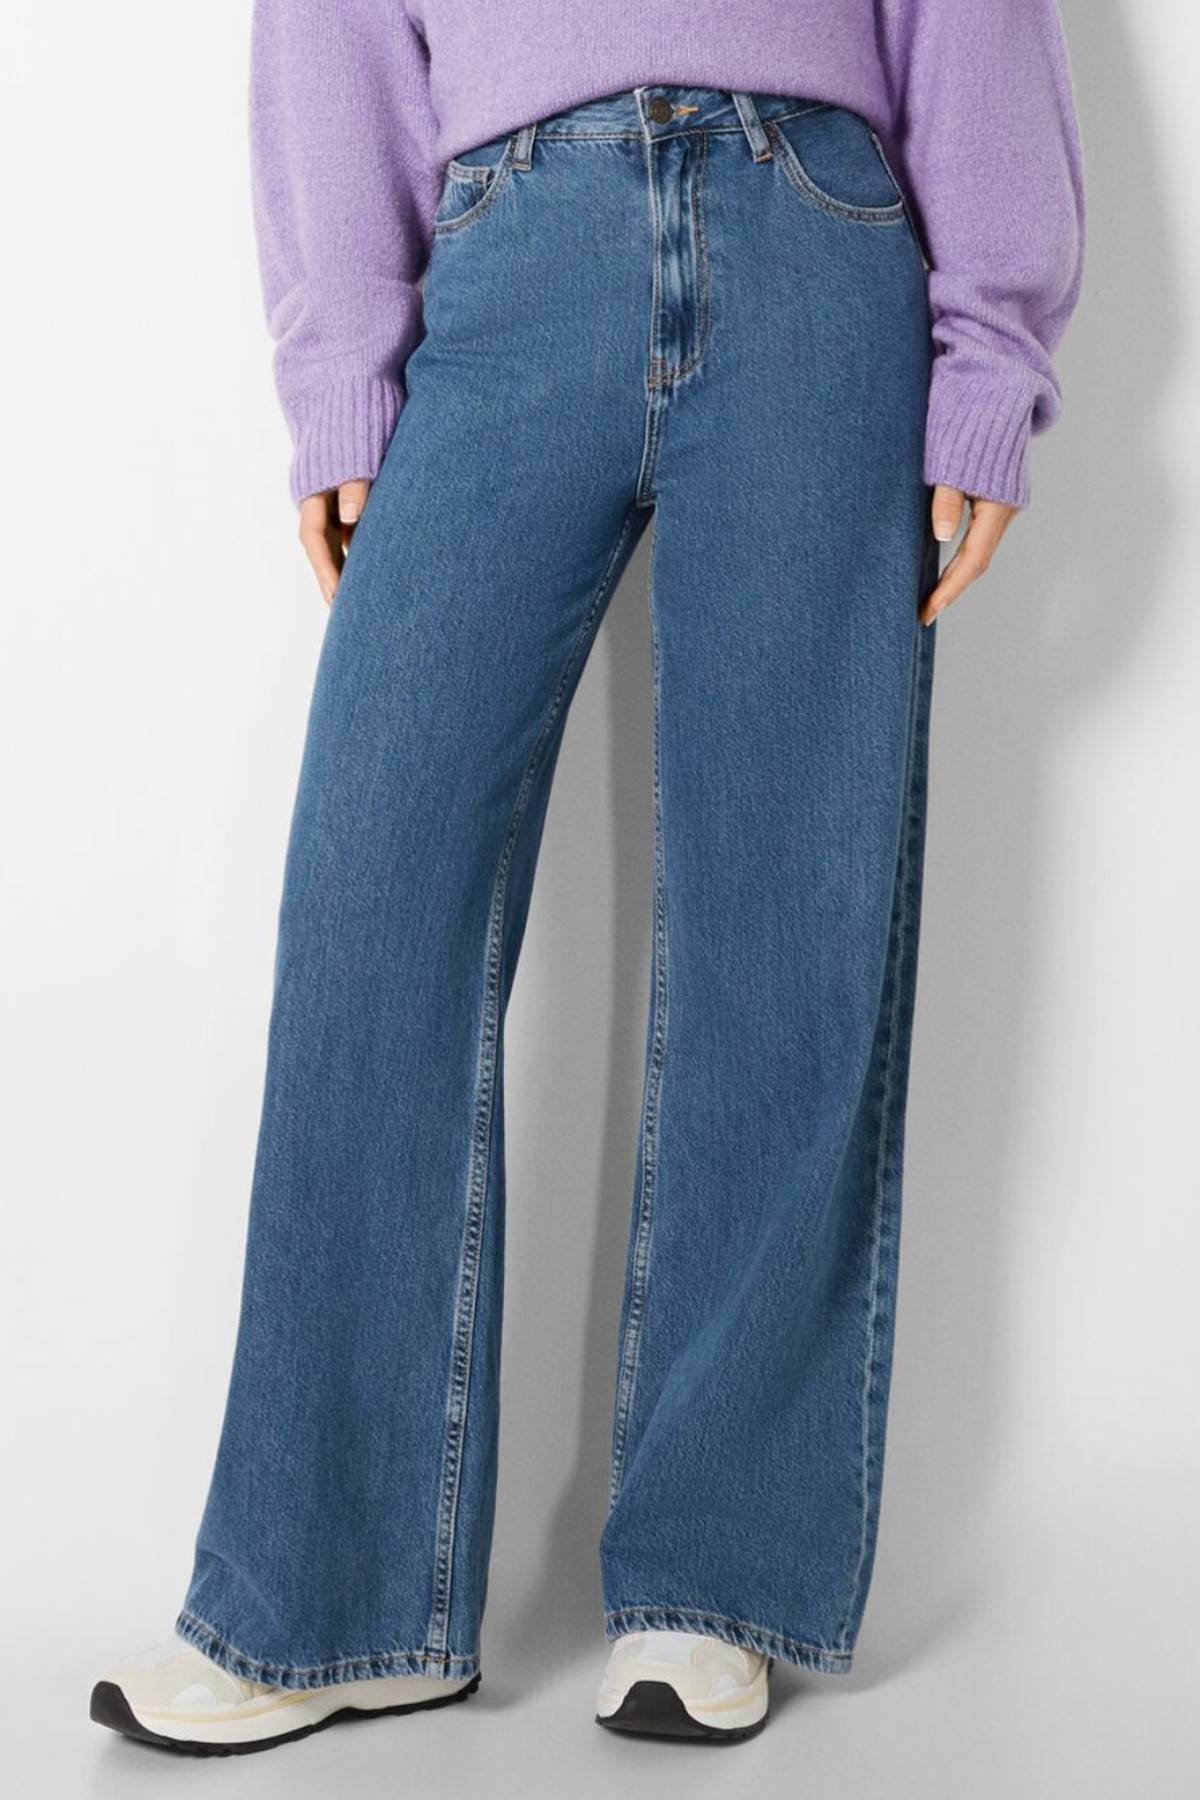 Los jeans más cómodos